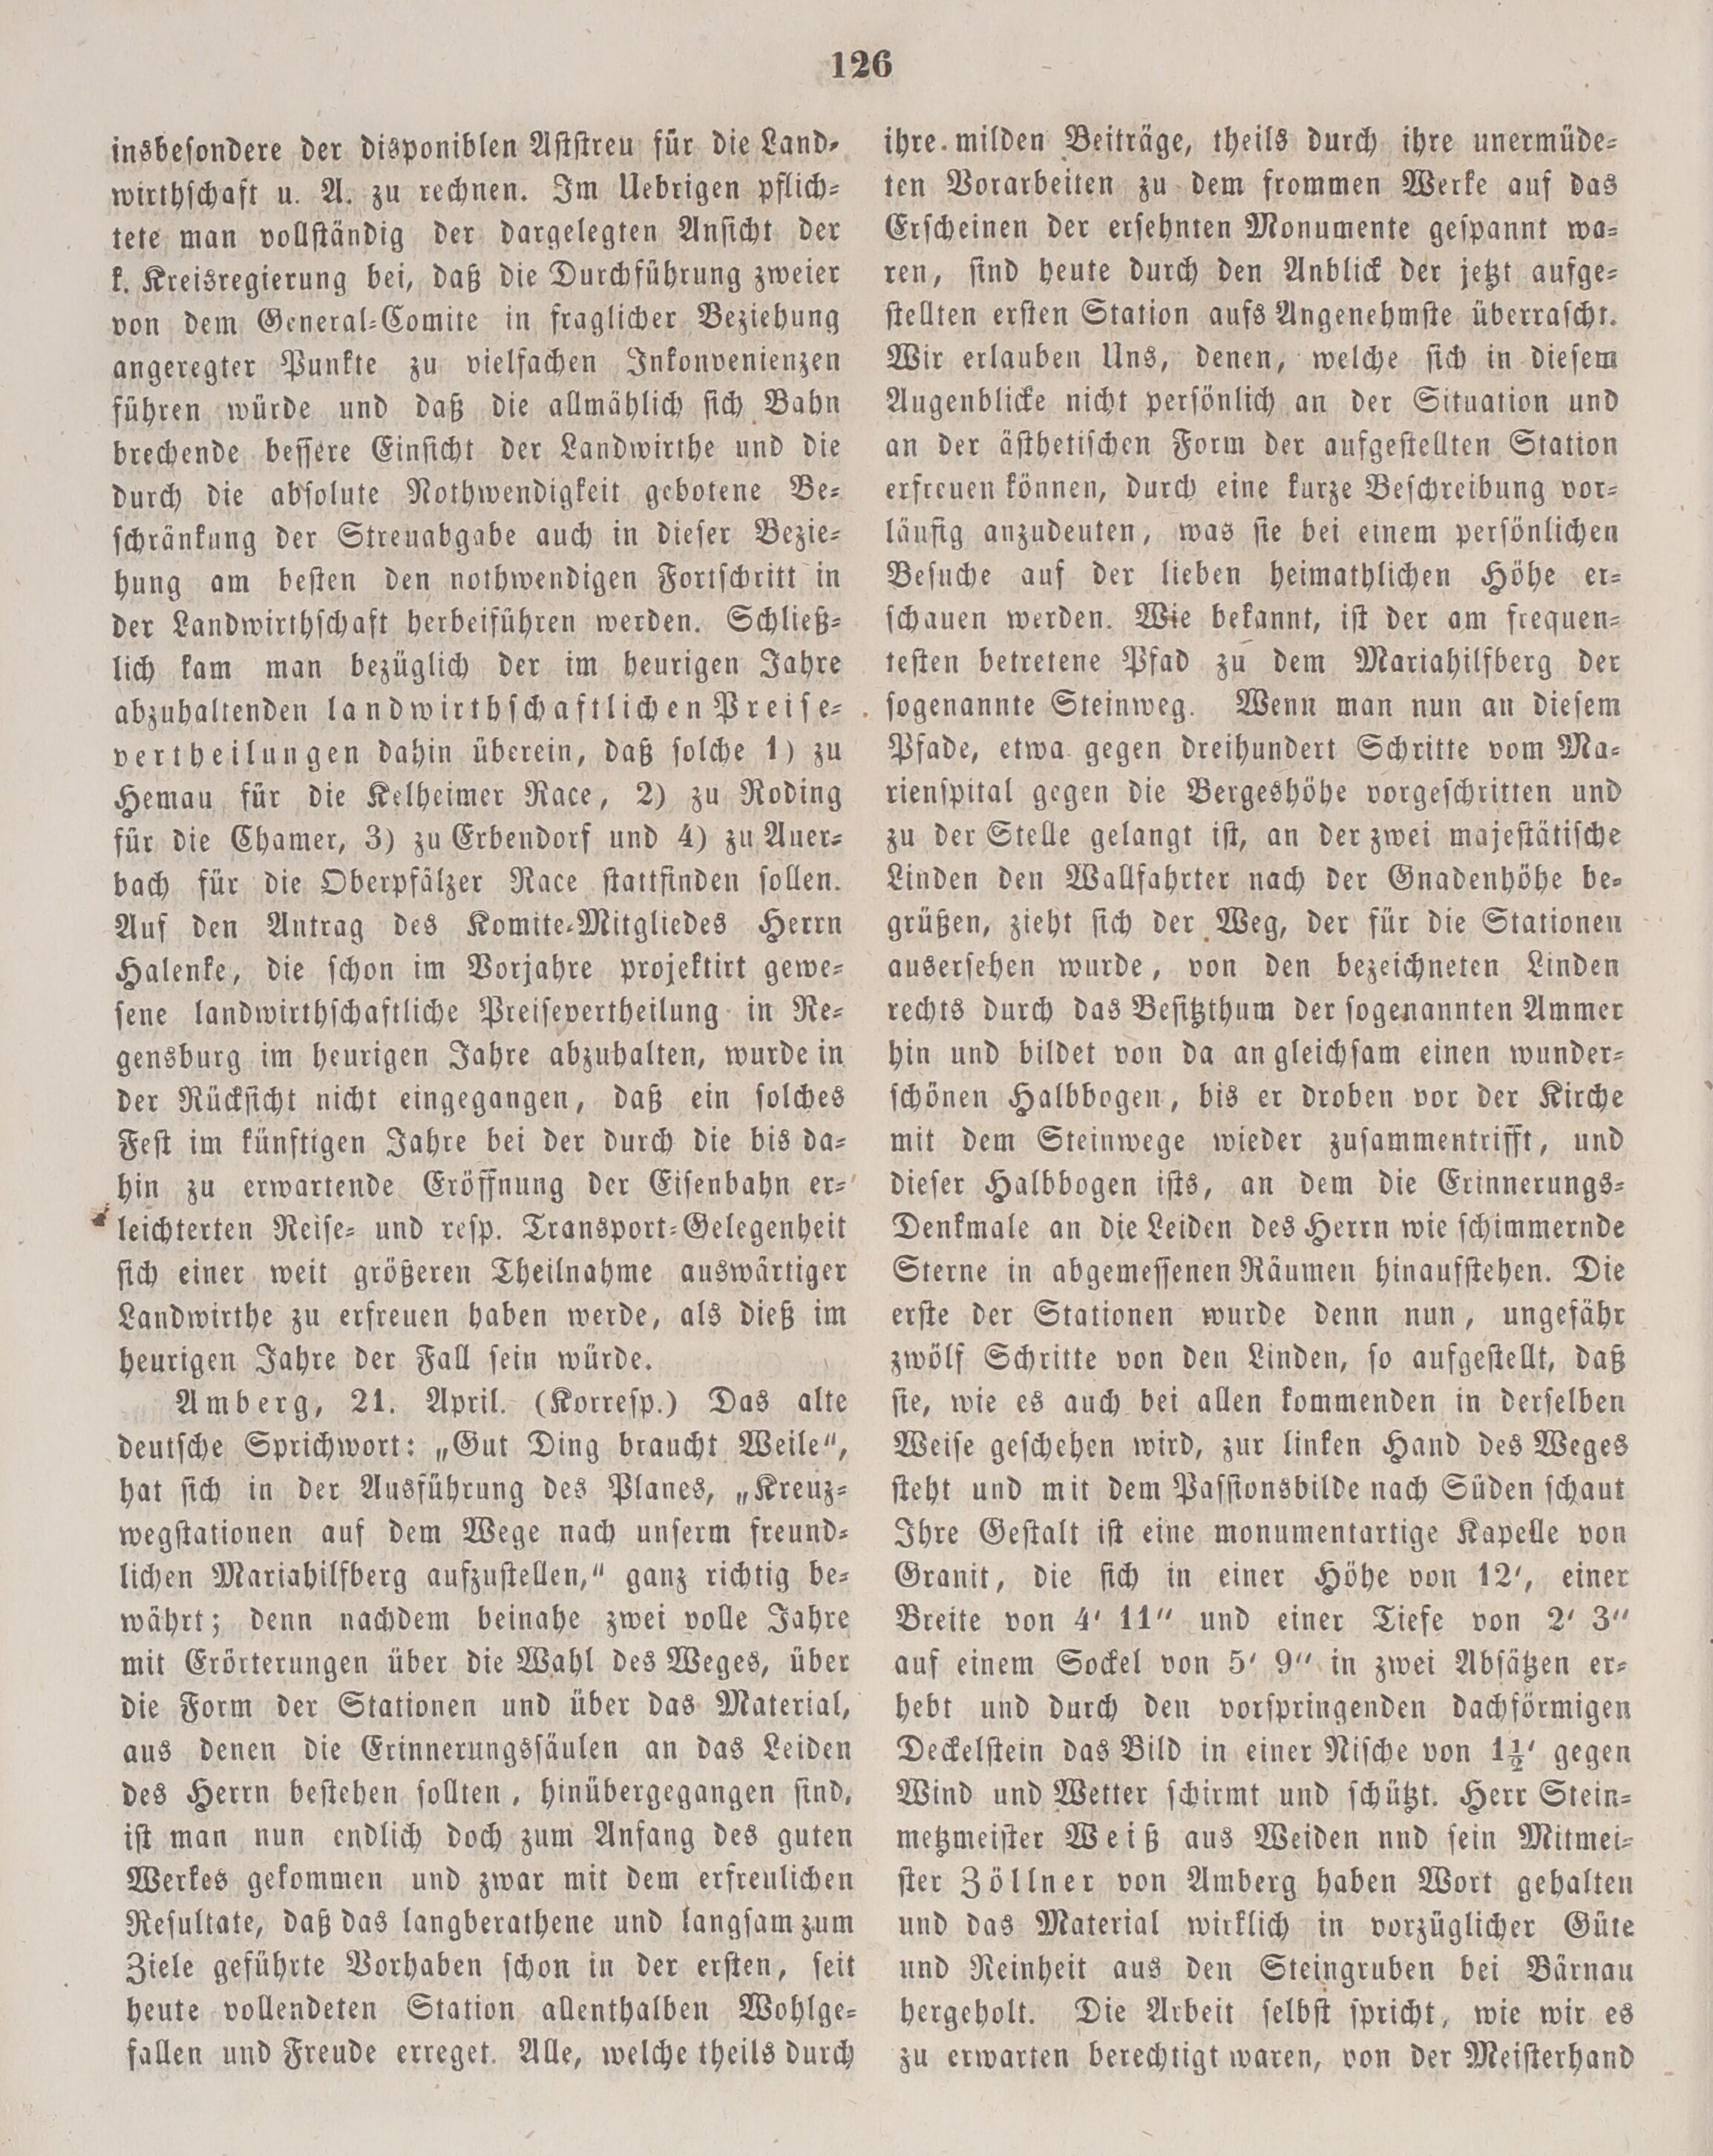 6. amberger-wochenblatt-1859-04-25-n17_1200